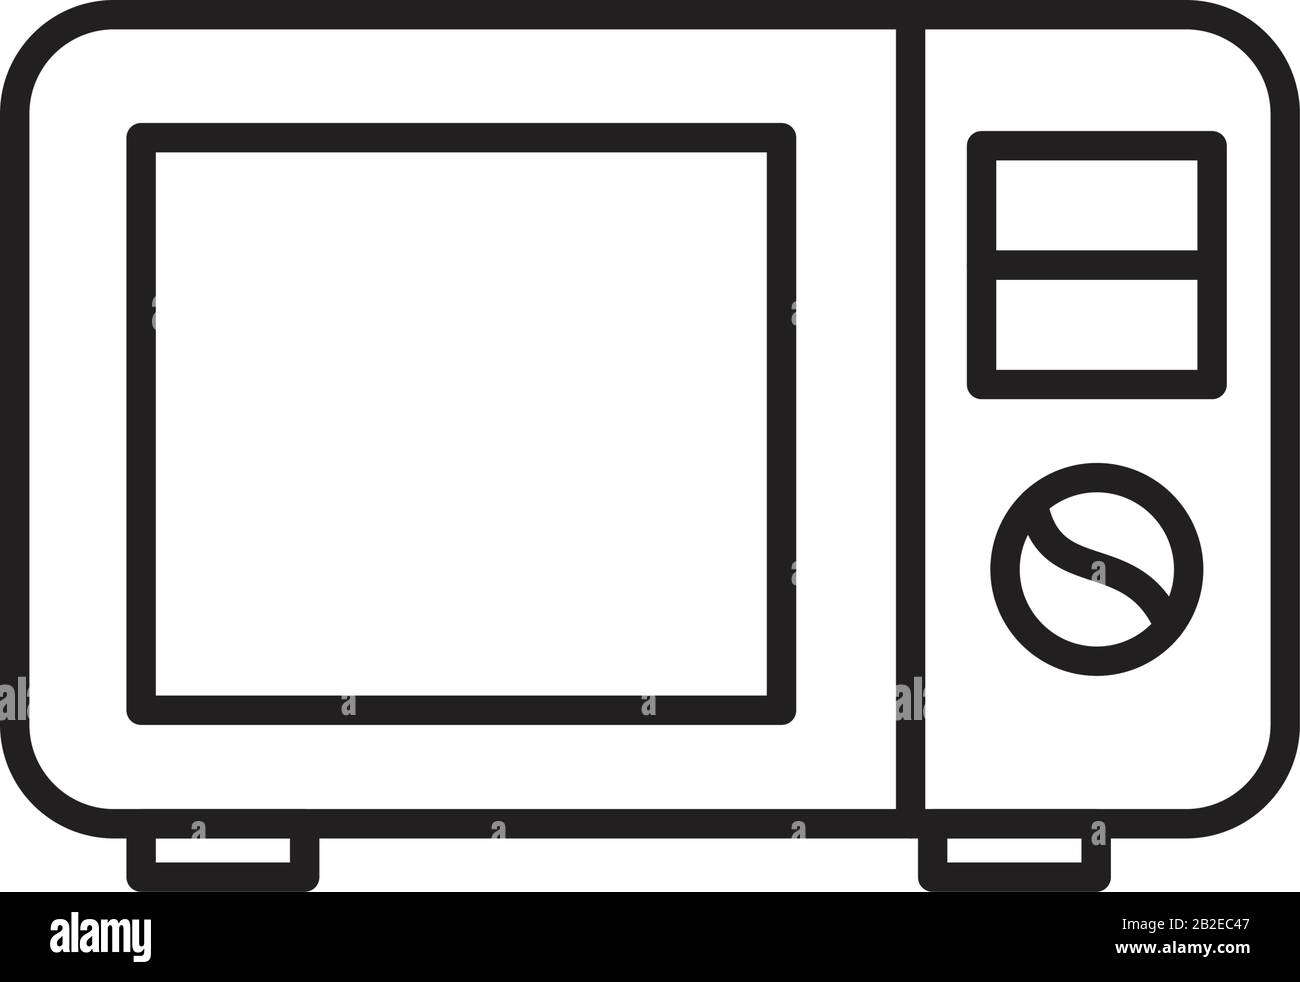 Mikrowellenofen - Symbolvorlage in schwarzer Farbe editierbar. Symbol für Mikrowellenofen Symbol für flache Vektorgrafiken für Grafik- und Webdesign. Stock Vektor